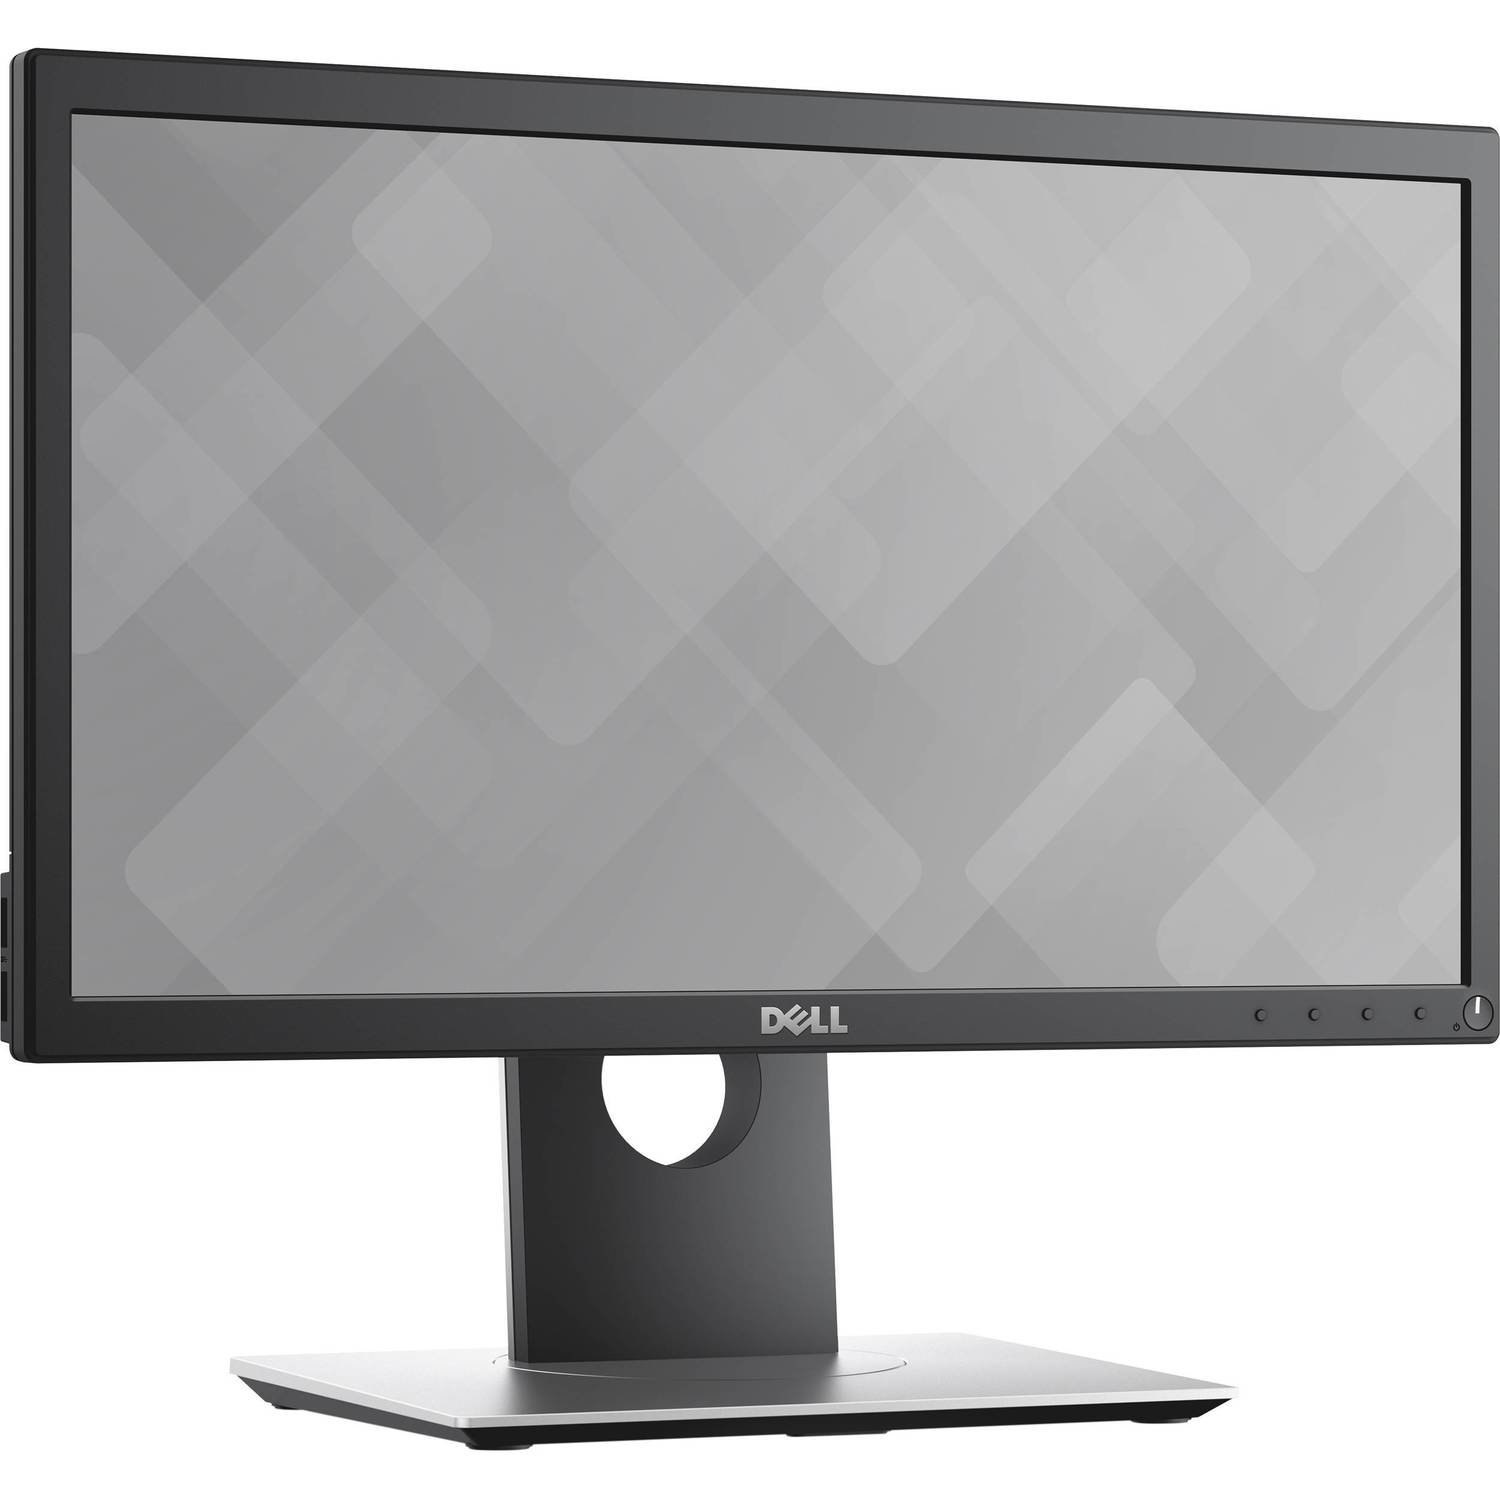 Dell 20" Monitor P2018H